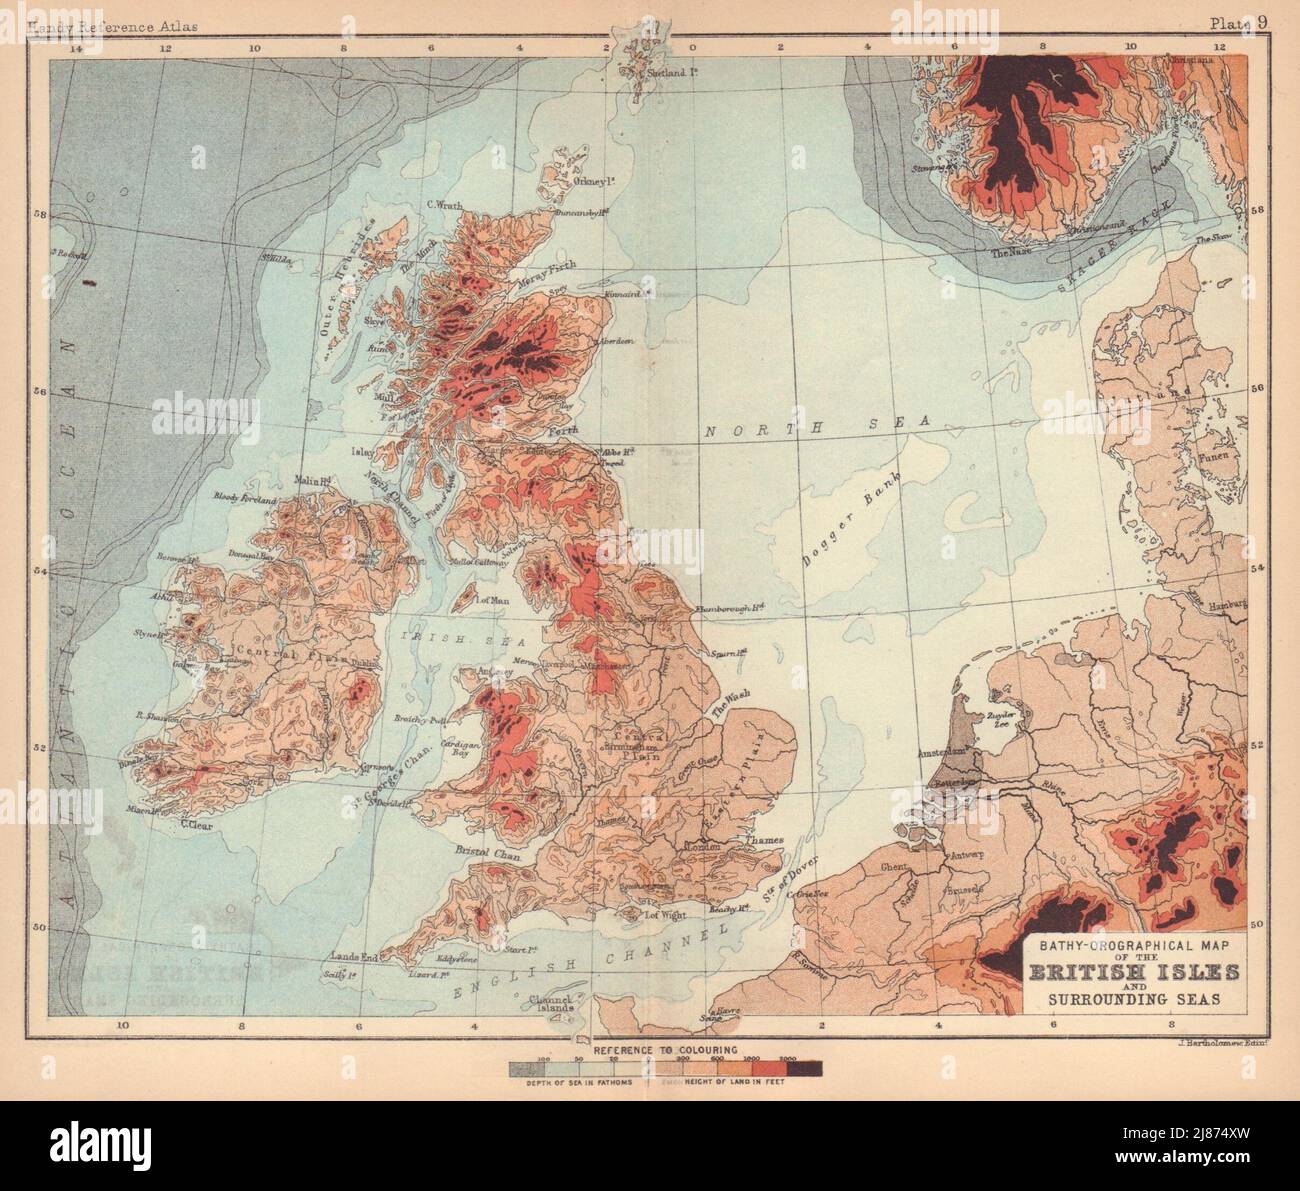 British Isles & Surrounding sea. Orographical. BARTHOLOMEW 1888 old map Stock Photo